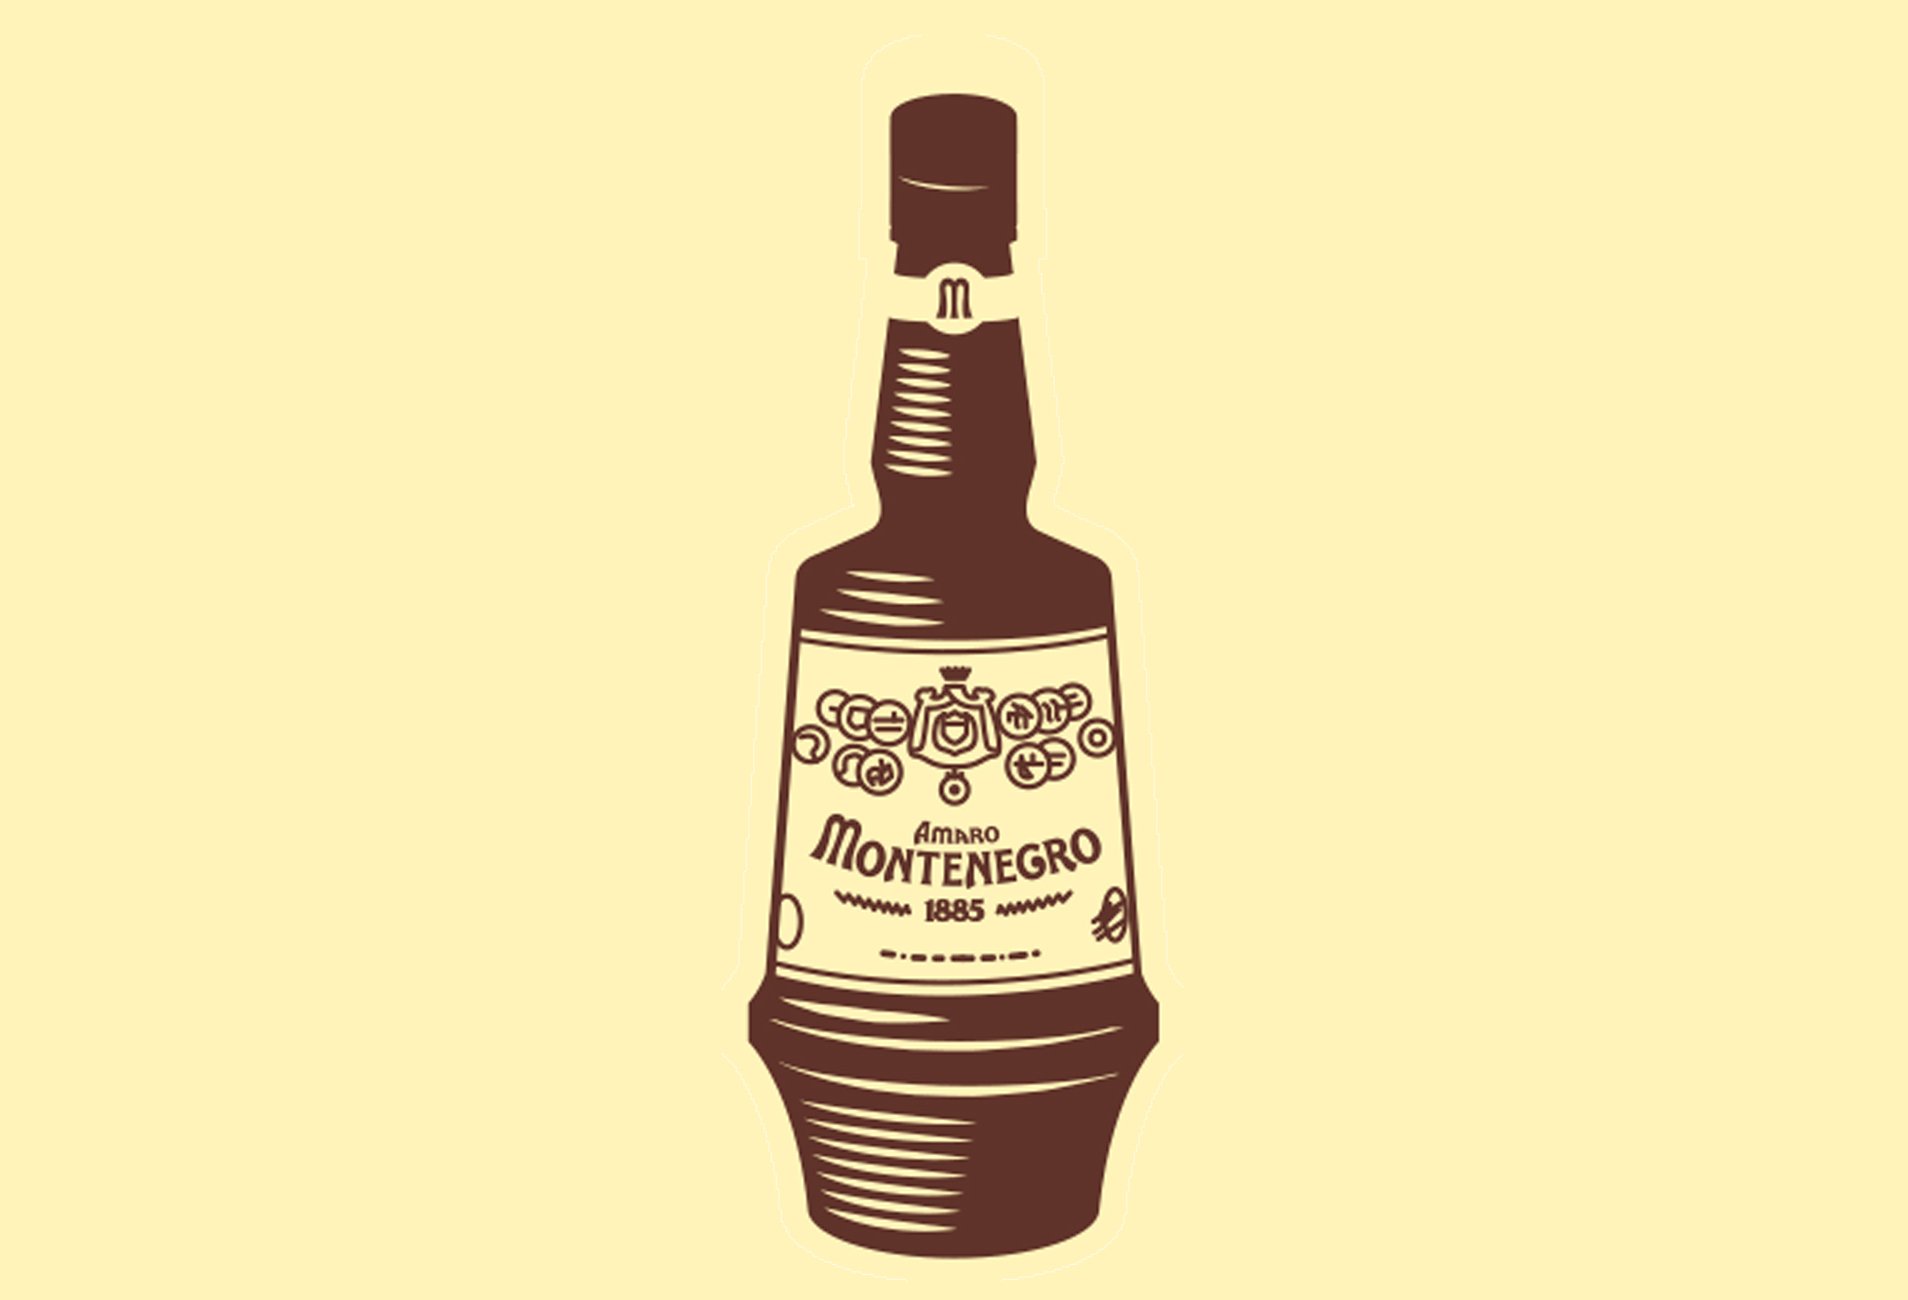 Amaro Montenegro bottle illustration landscape